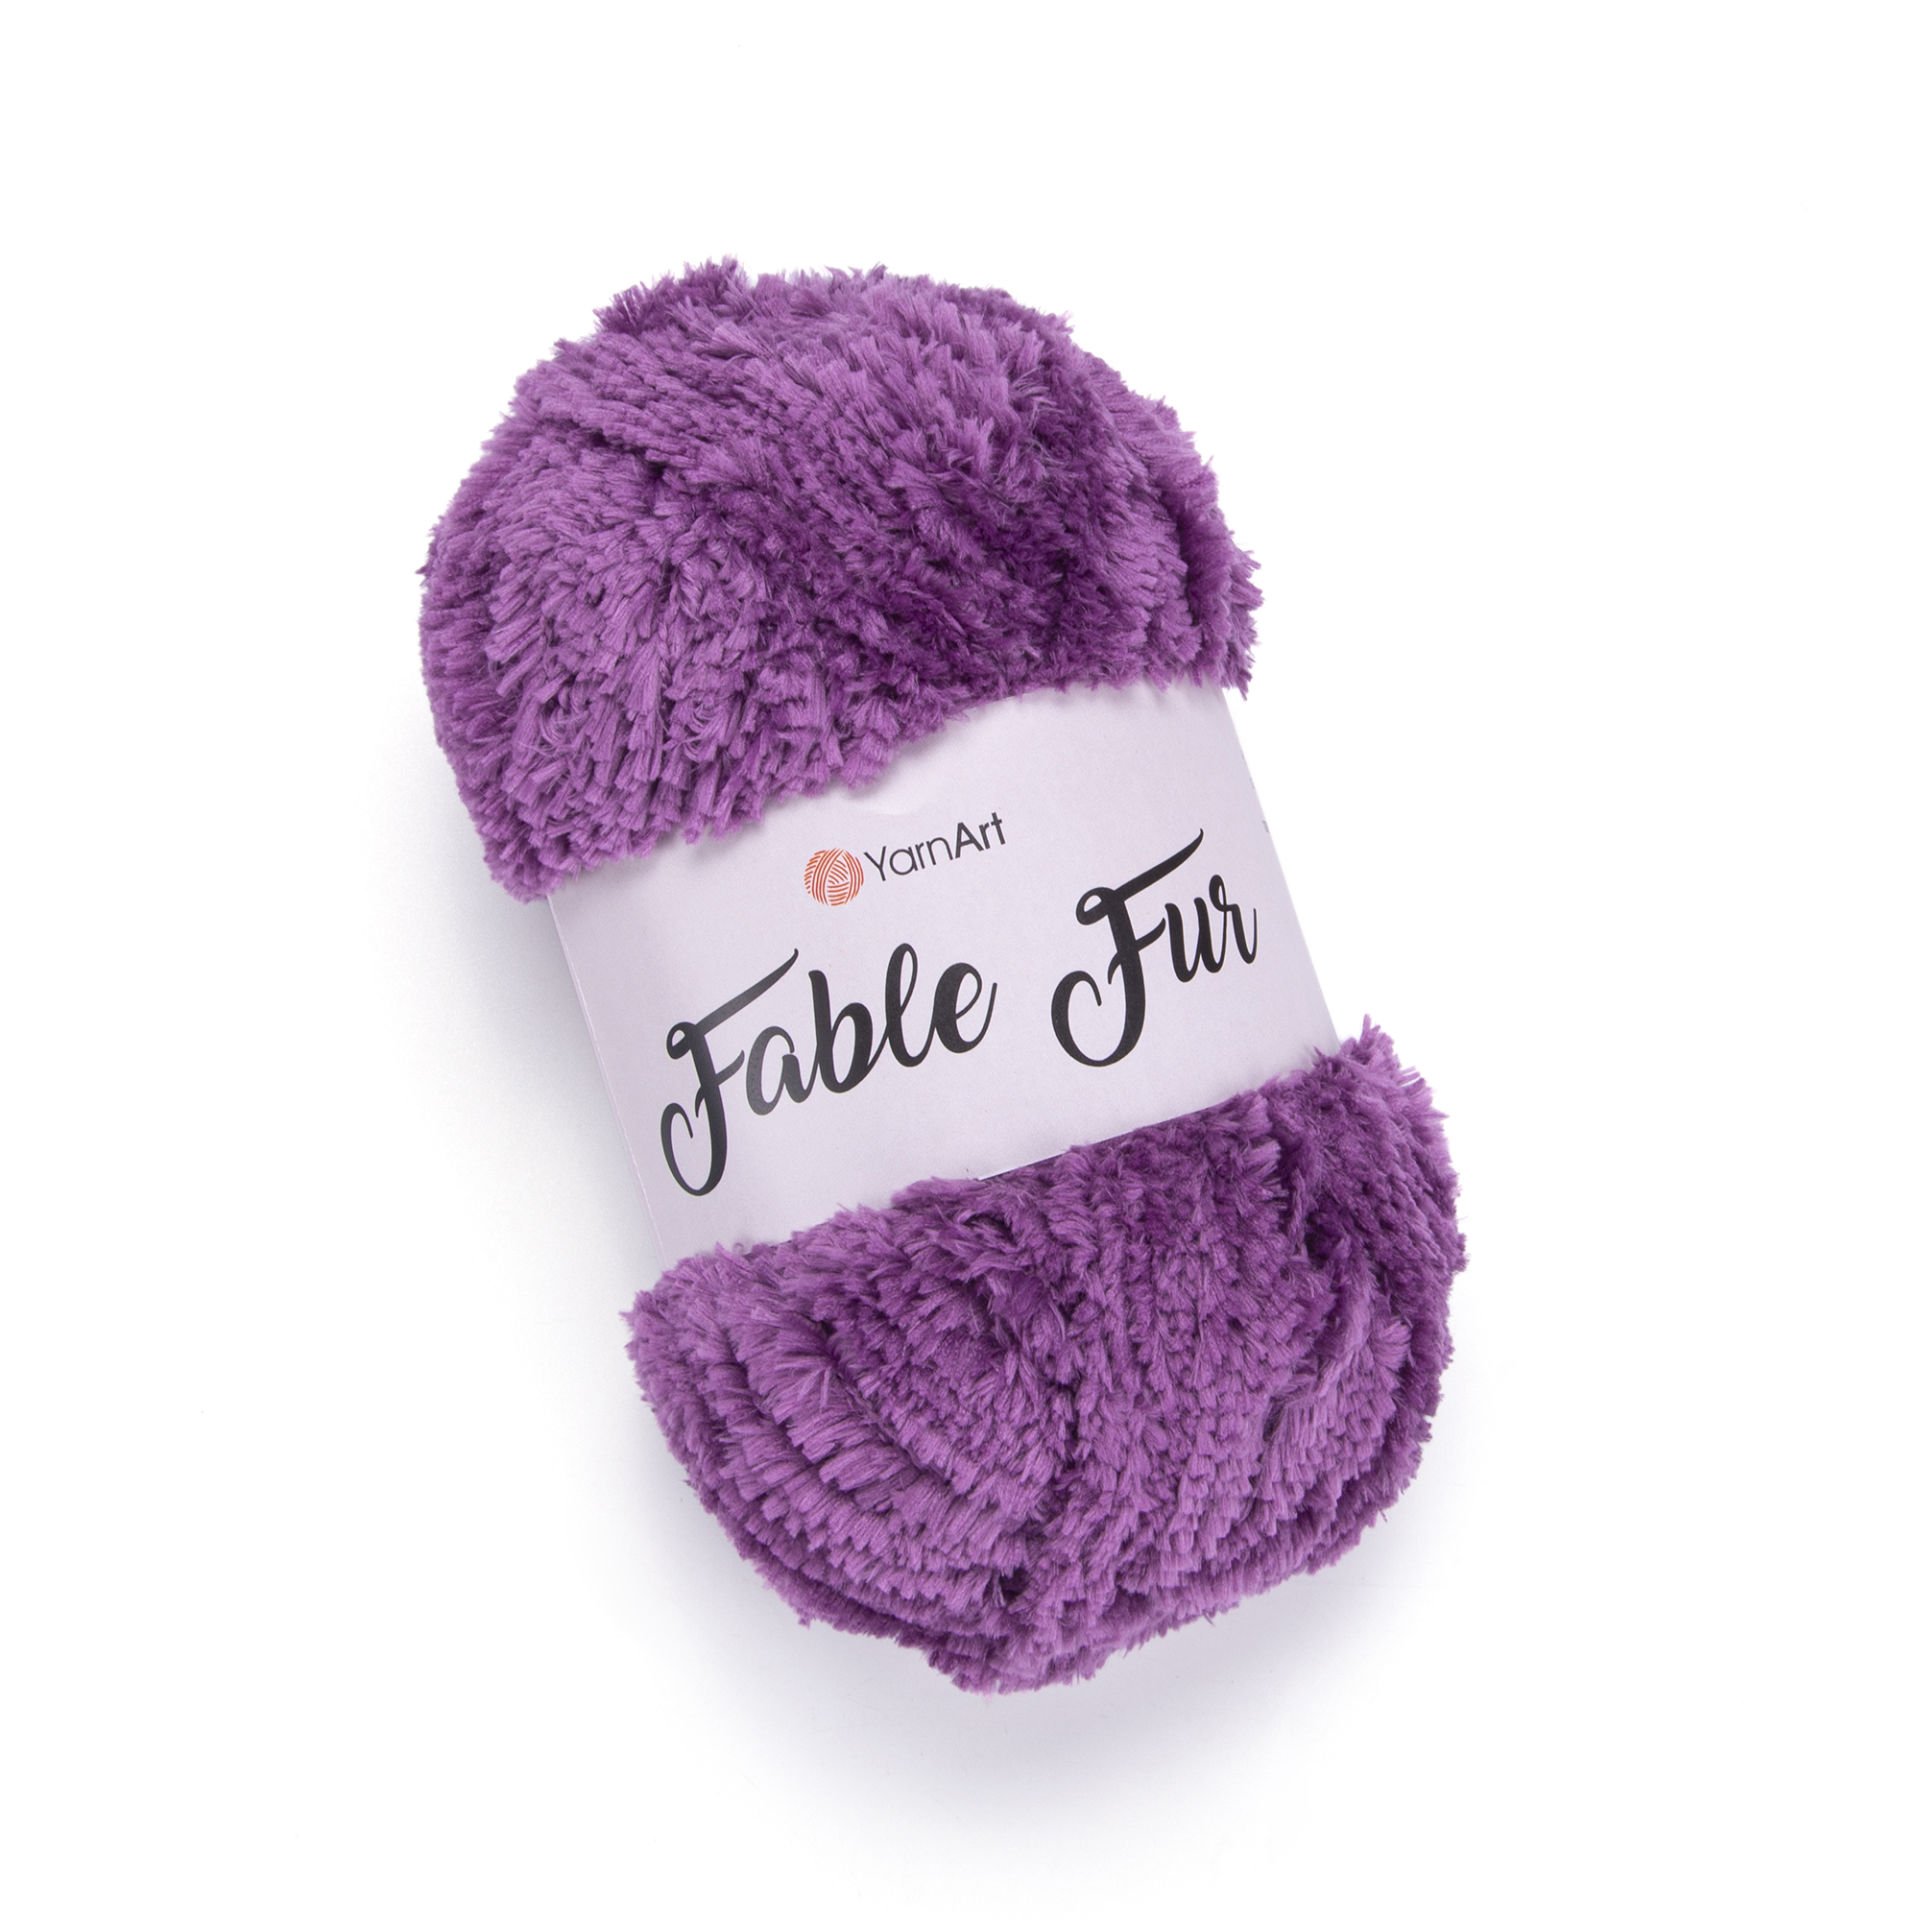  Yarnart Mink Fur Yarn, Soft Fur Yarn Chunky Fluffy